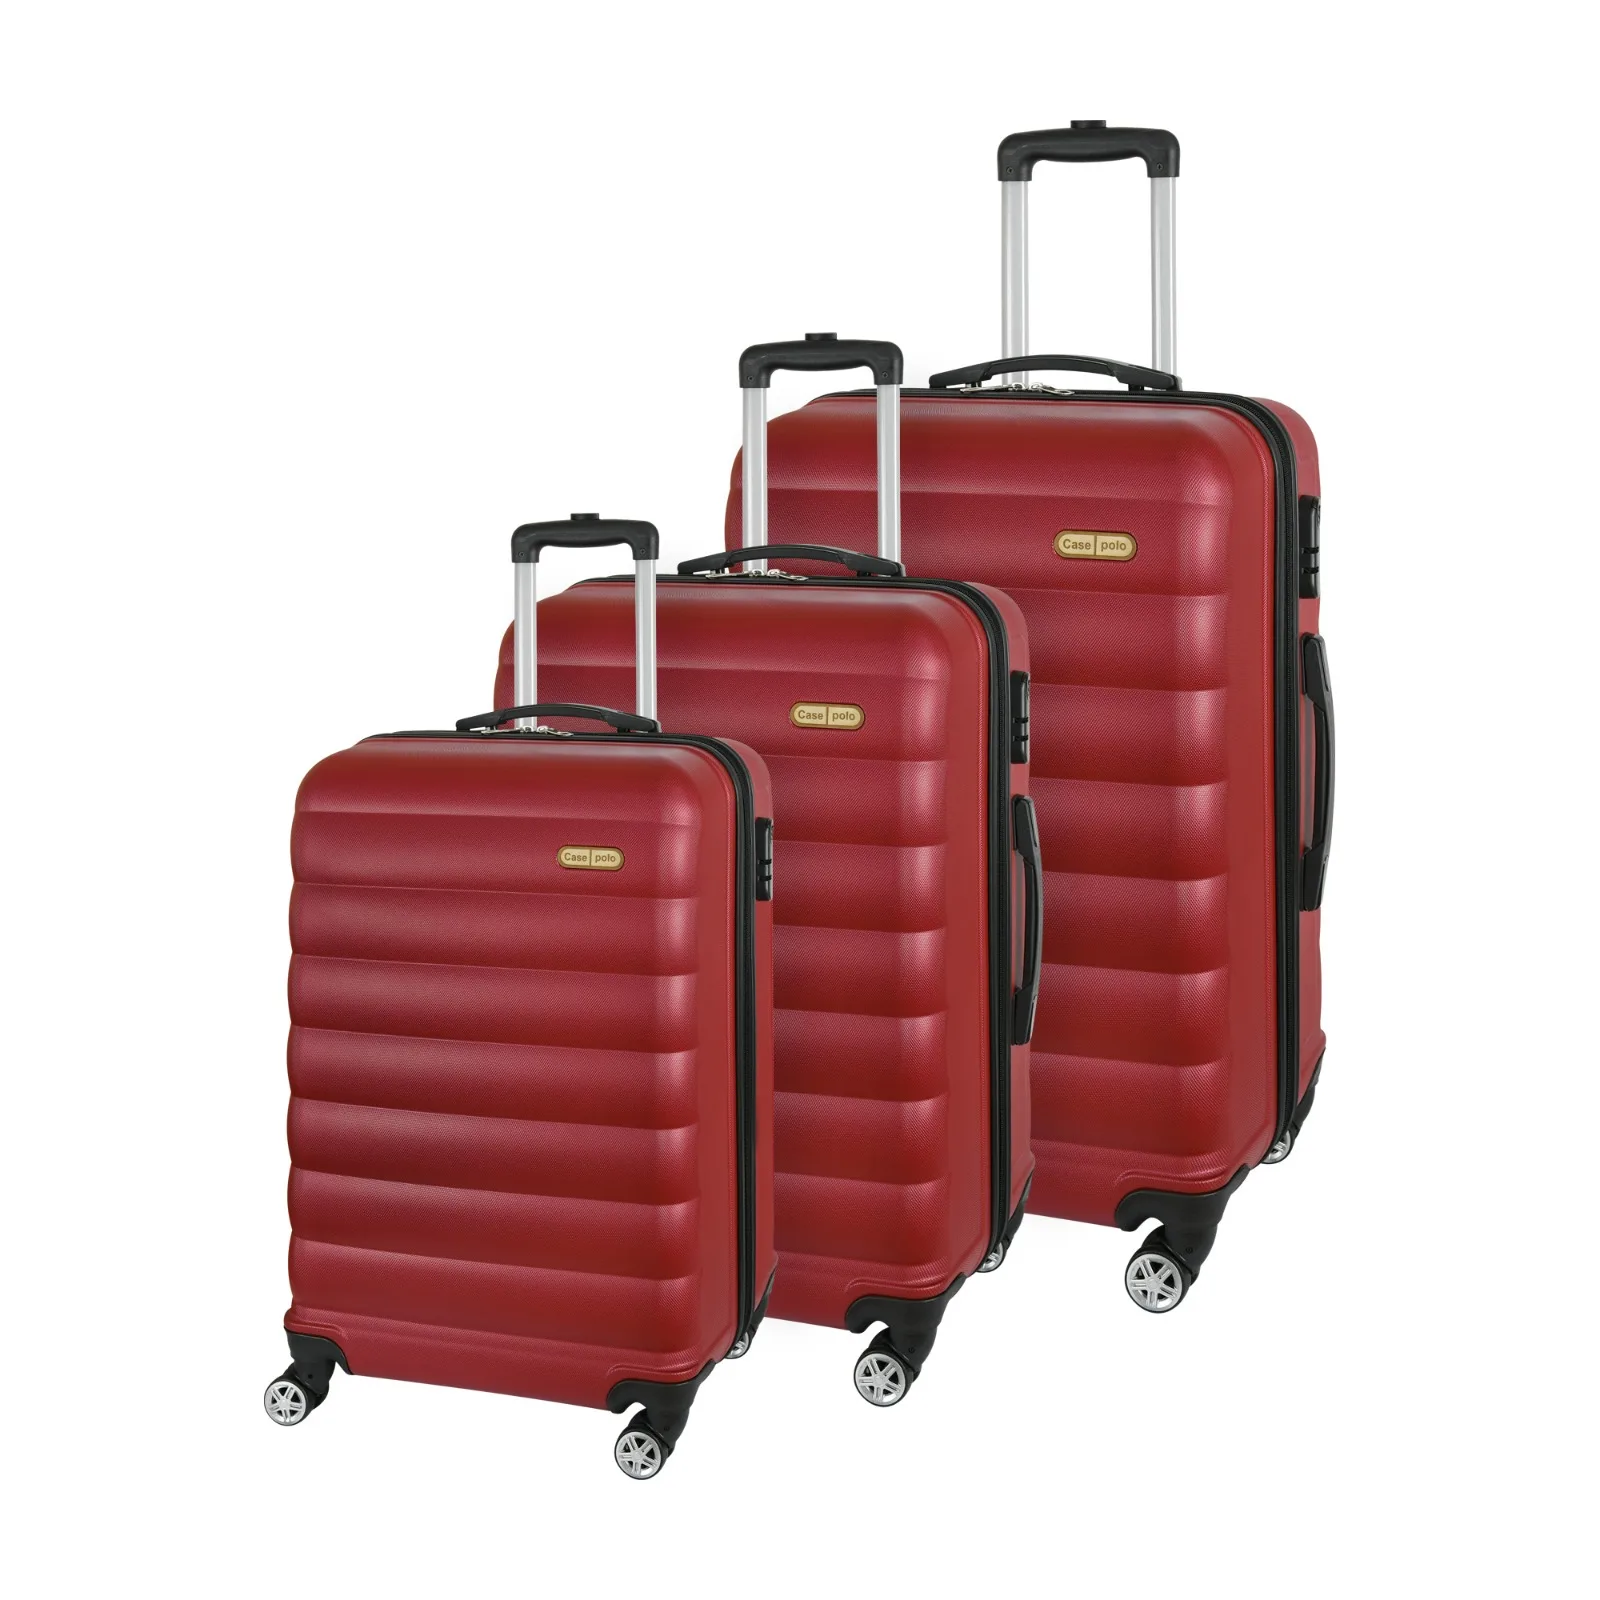 ABS-Valigie 3tlg Palmavaligia valigia da viaggio|Trolley Viaggio Trolley 